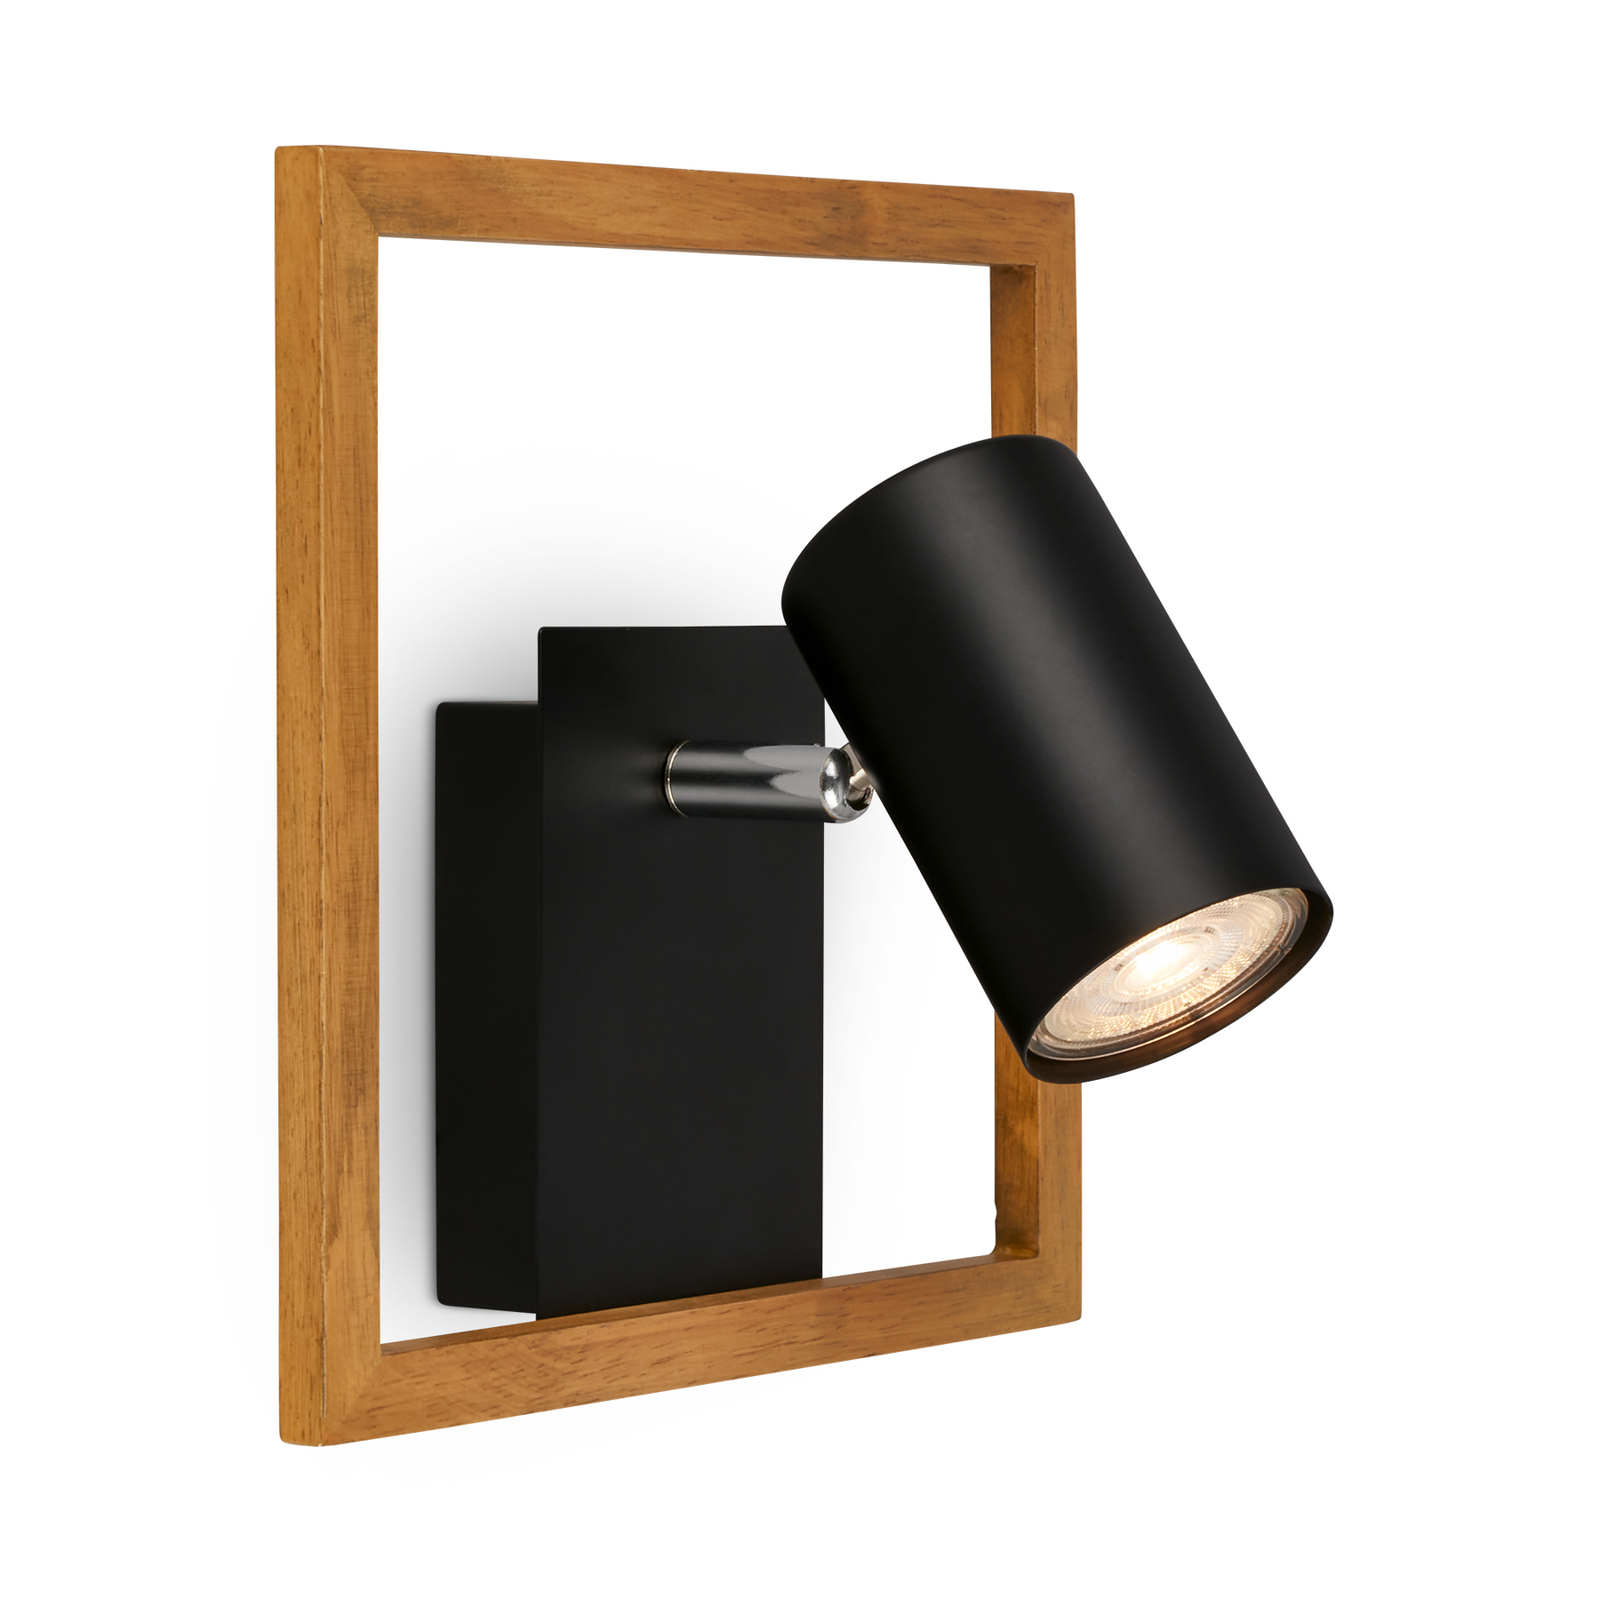 2138015 wall spotlight in black, wooden frame